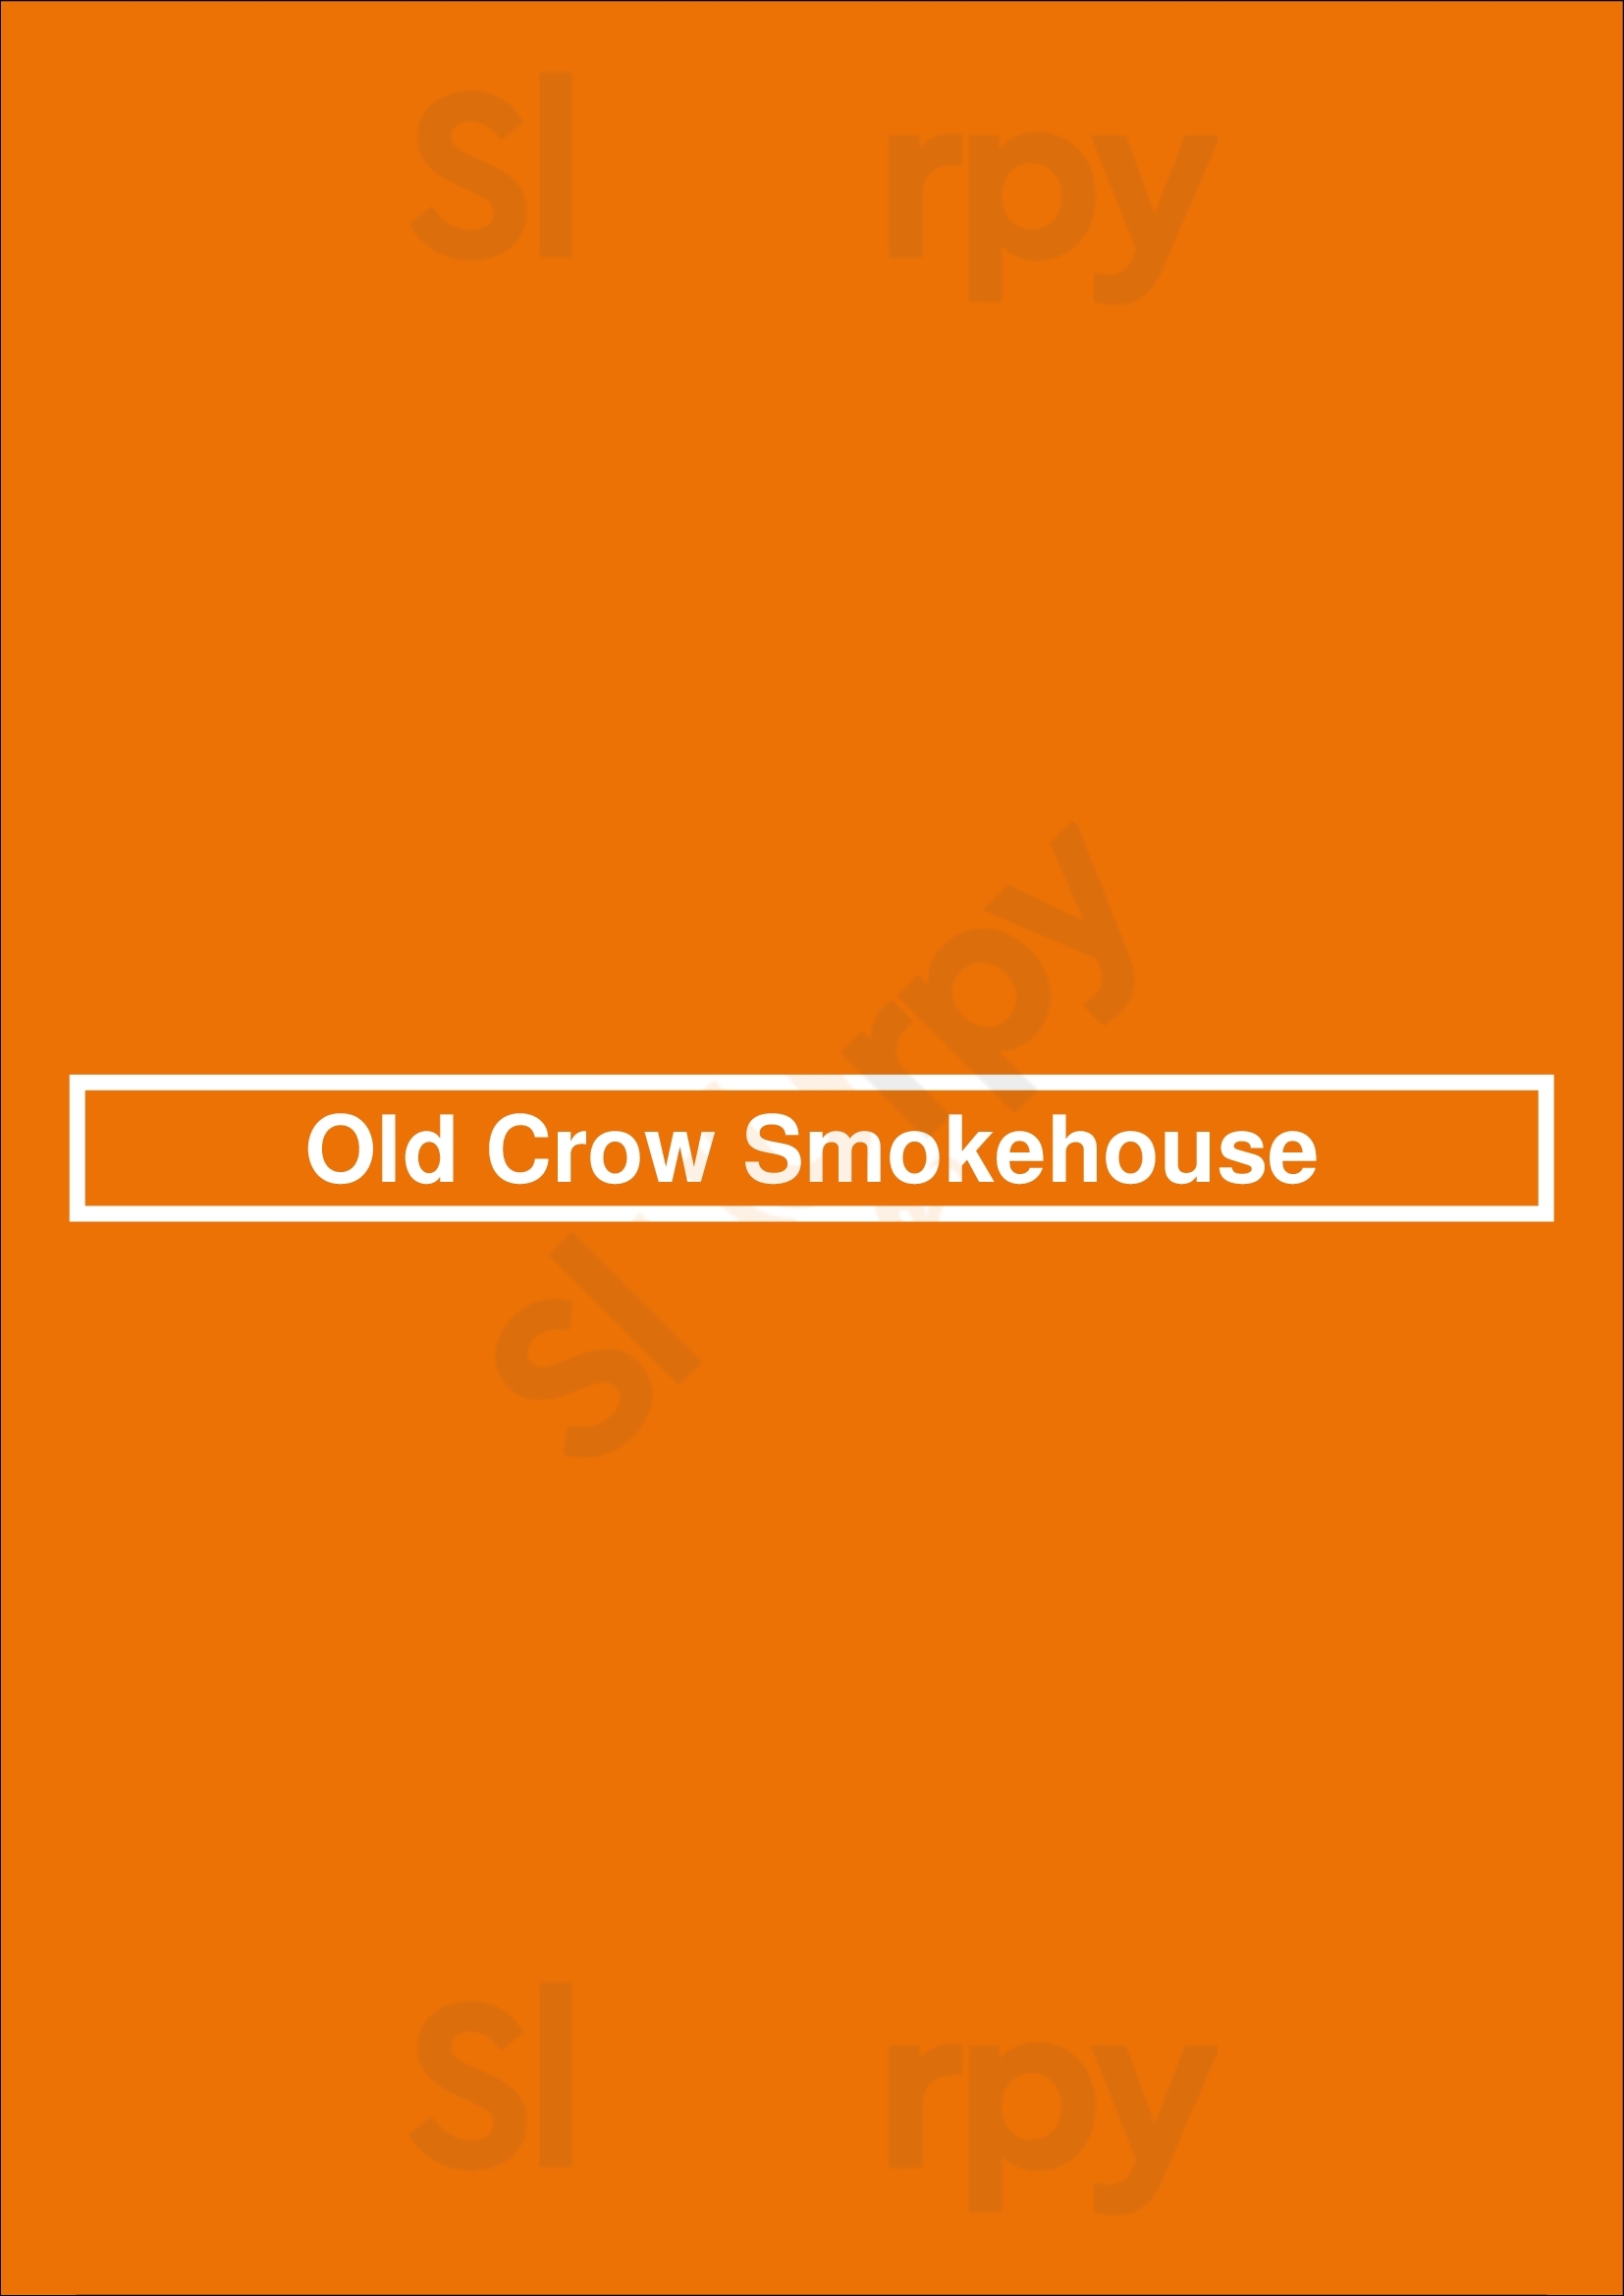 Old Crow Smokehouse Orange Menu - 1